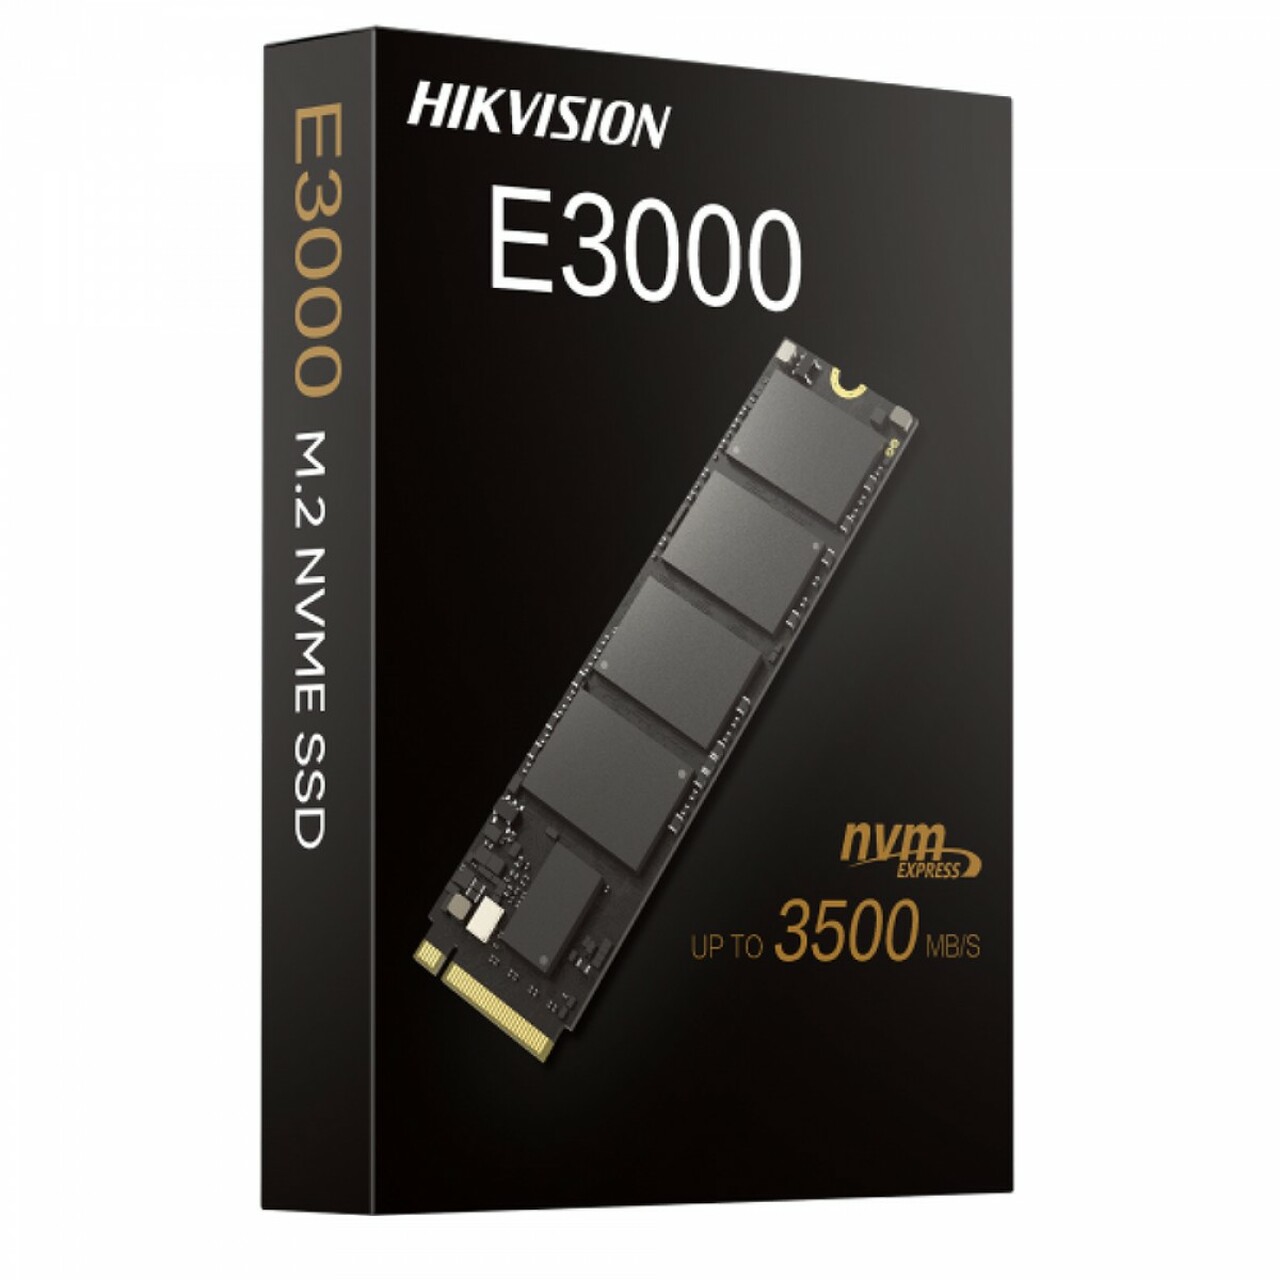 Hikvision%202048%20Gb%20HS-SSD-E3000-2048G%20E3000%203520MB-3000MB-s%20NVMe%20Ssd%20Harddisk